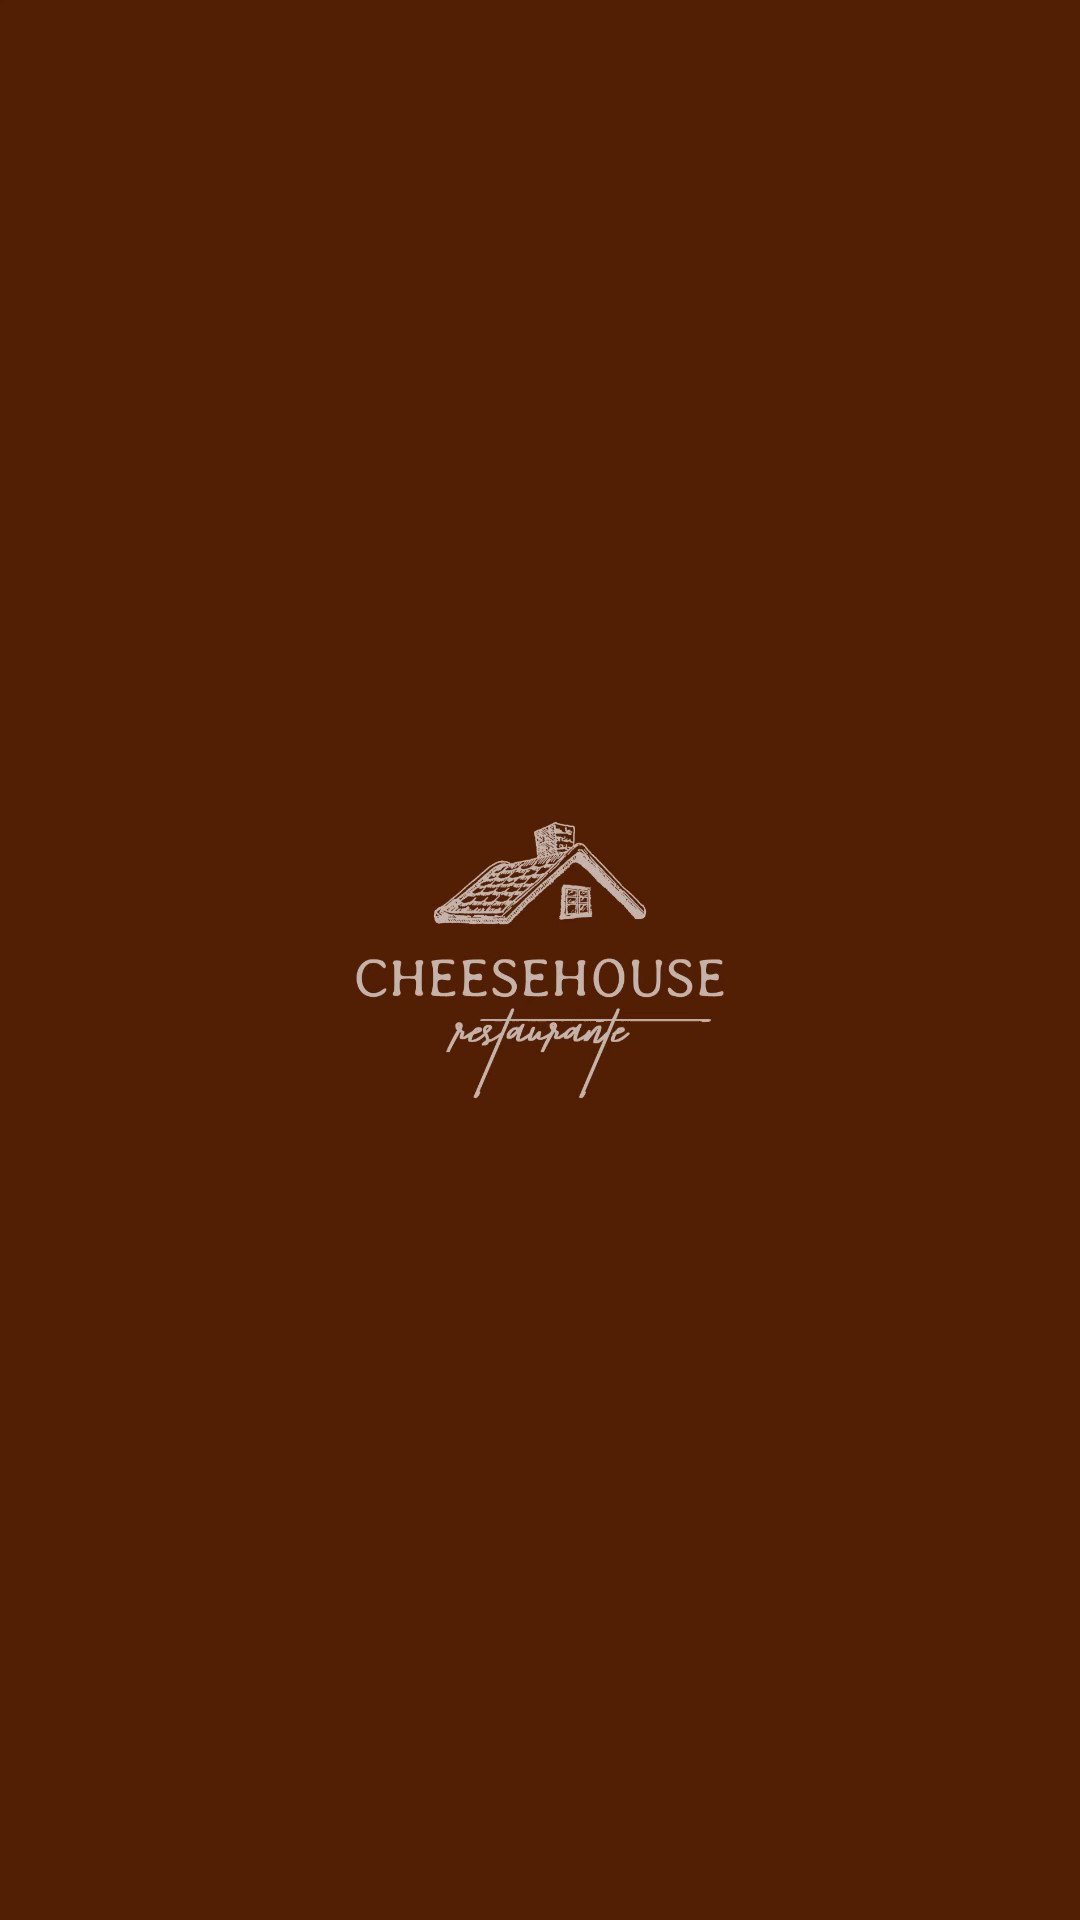 Cheesehouse (@Cheesehousebr) / X